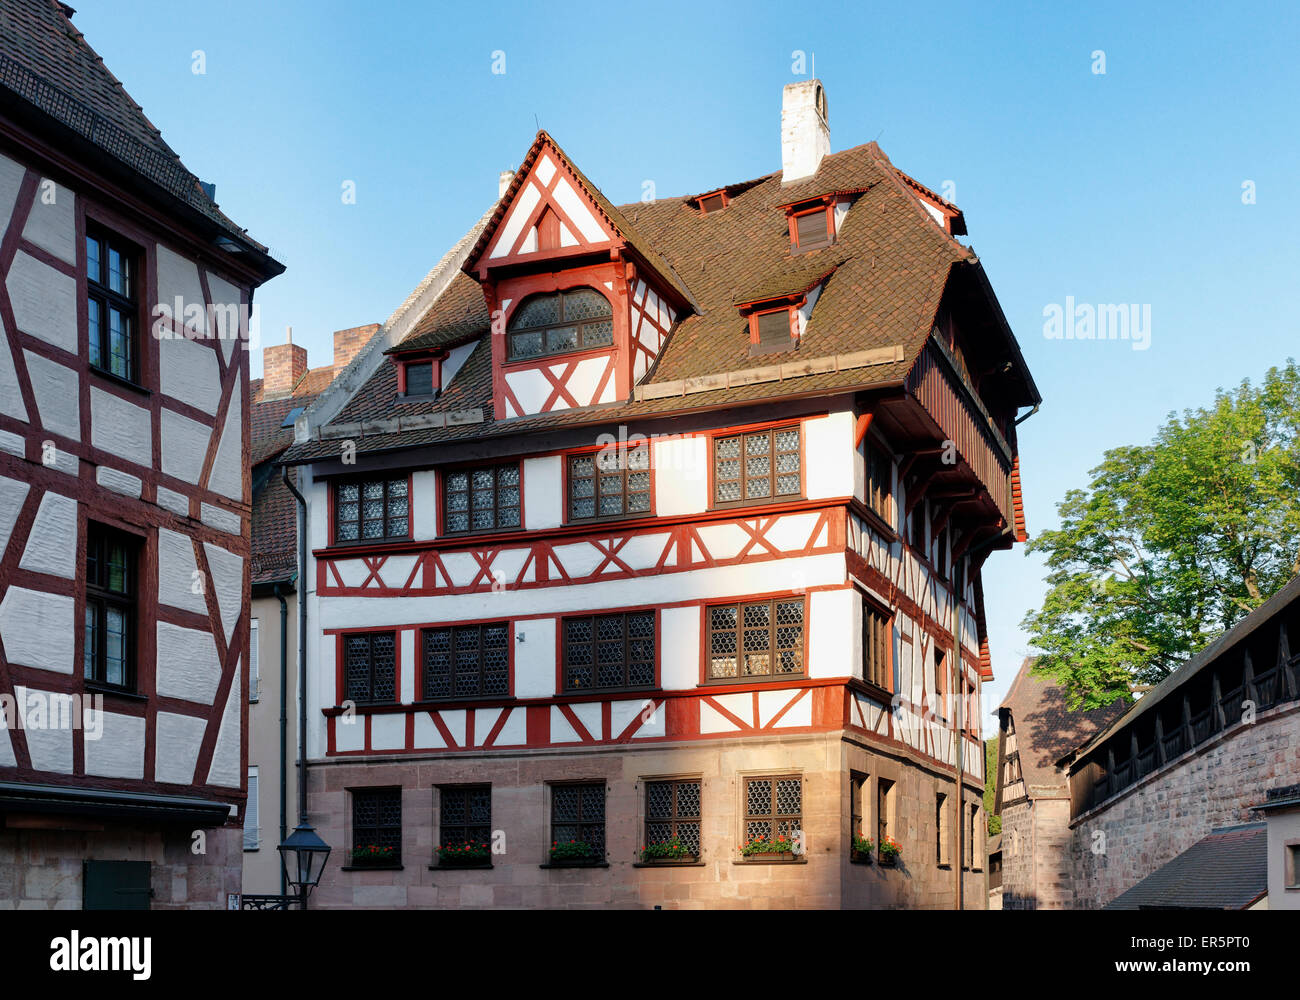 Albrecht Duerer House, lieu de travail et de vie de l'artiste Albrecht Duerer, Tiergaertnertorplatz 1471-1528 Square, Nuremberg, M Banque D'Images